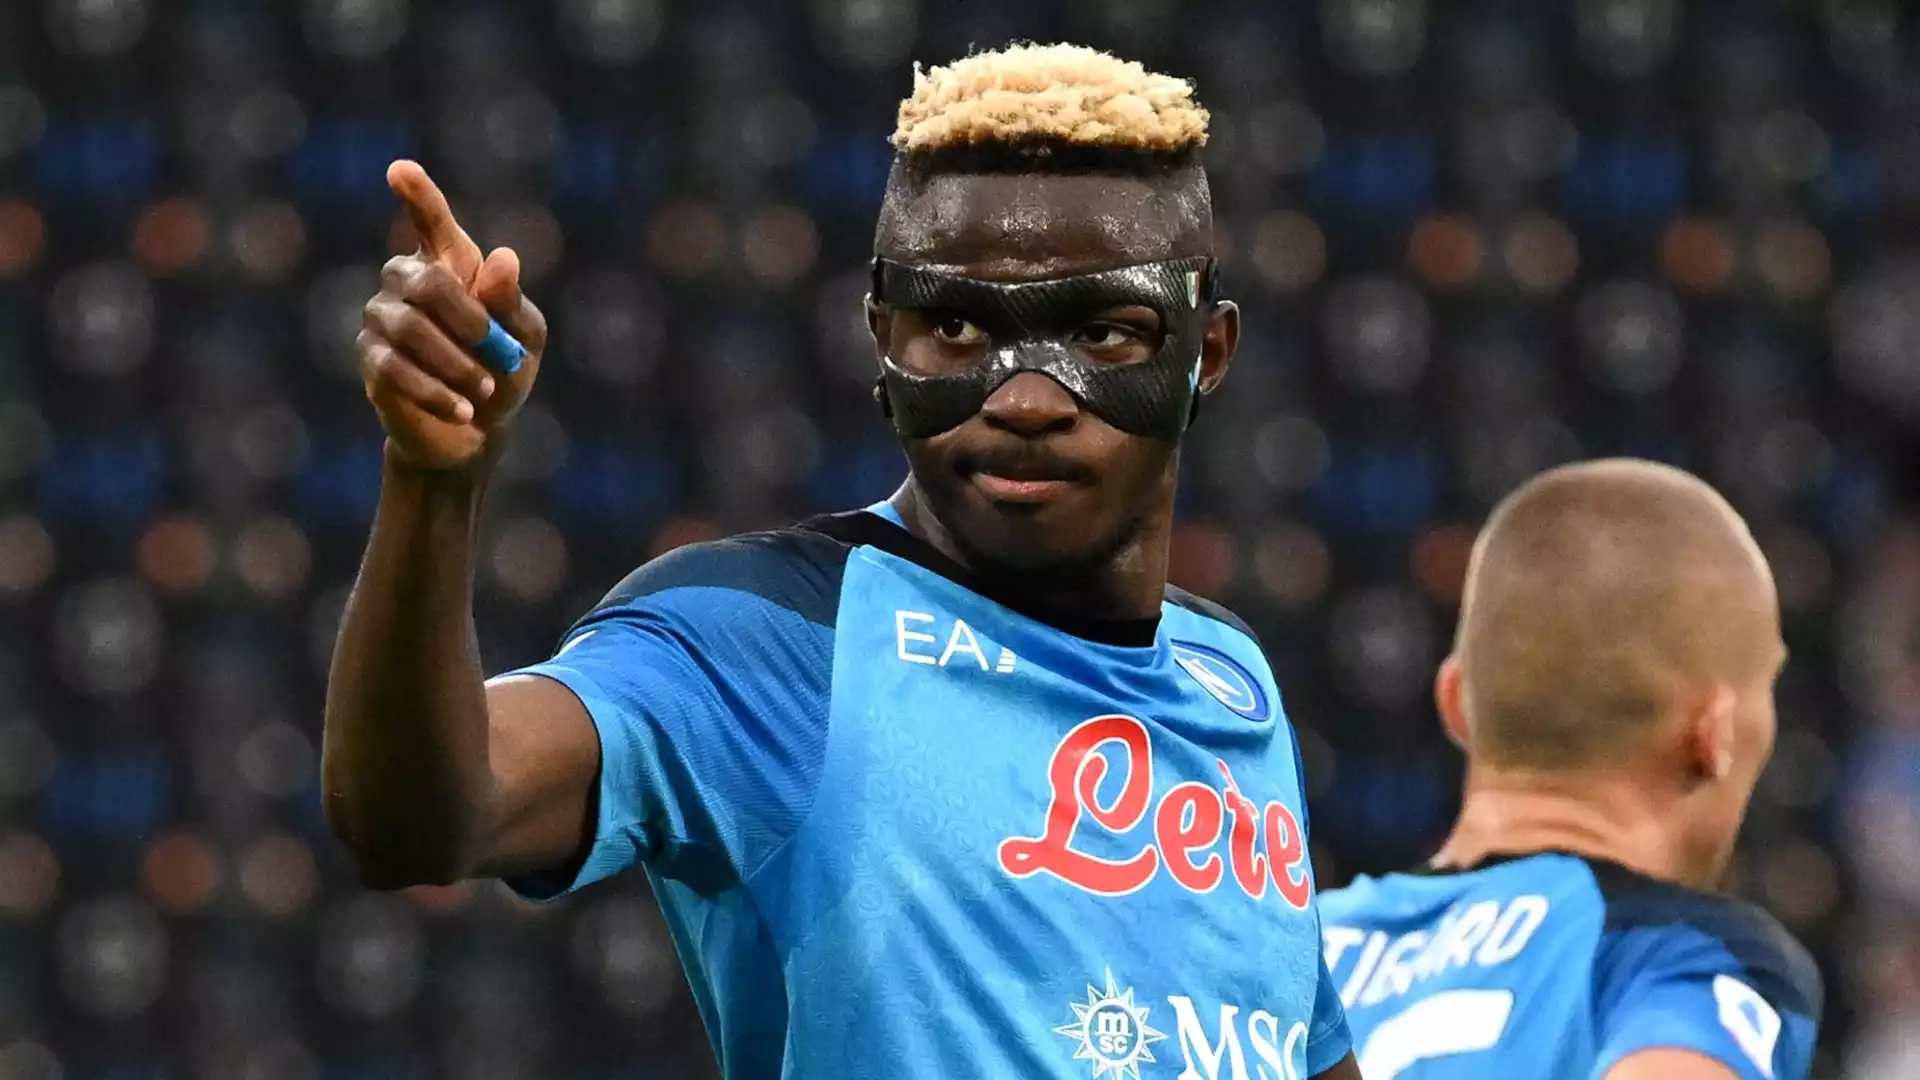 Il Napoli vuole trattenere Victor Osimhen, ma De Laurentiis potrebbe lasciare andare l'attaccante nigeriano se arriveranno offerte superiori a 150 milioni di euro